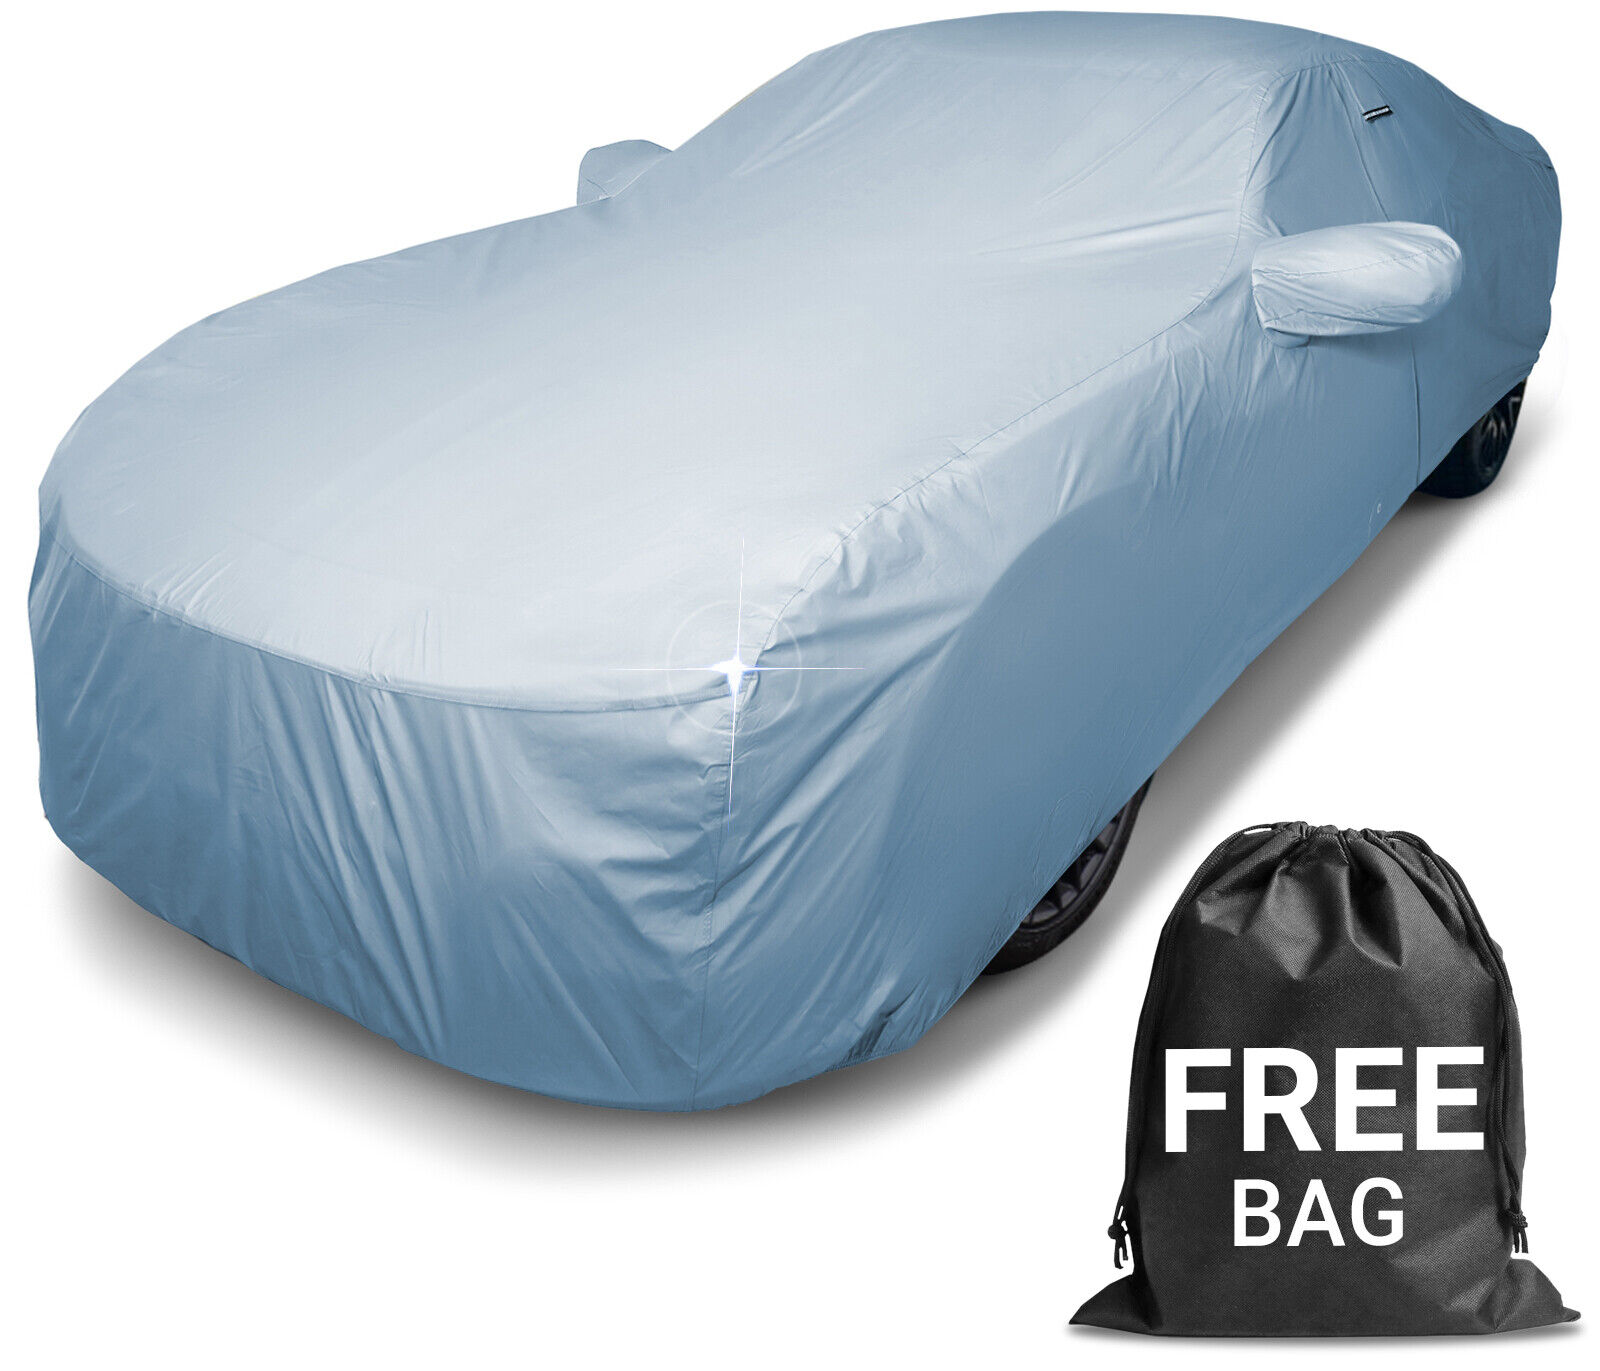 For LOTUS [EVORA] Premium Custom-Fit Outdoor Waterproof Car Cover